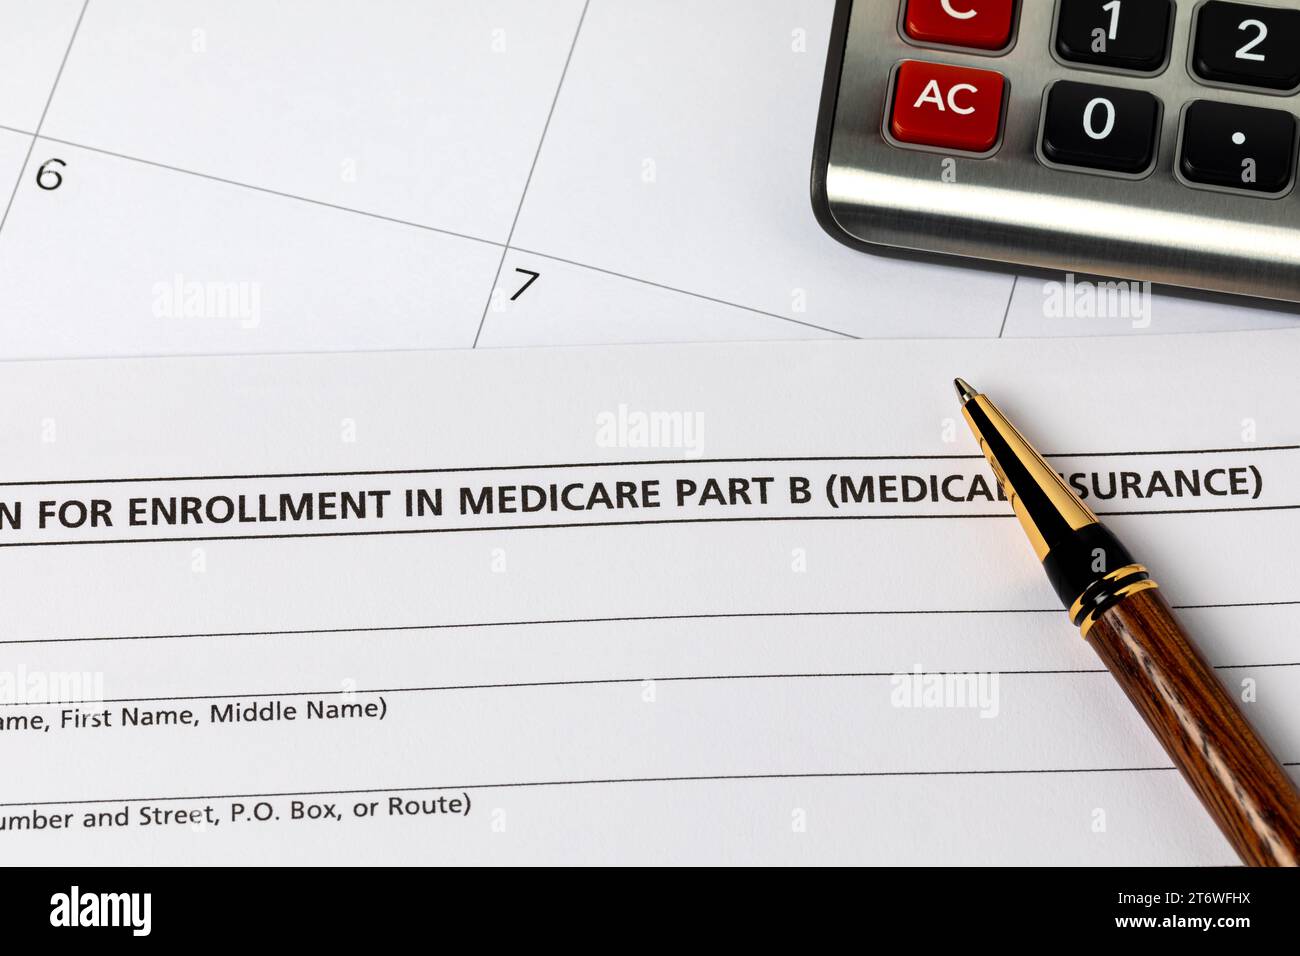 Medicare Krankenversicherungsformular mit Kalender. Gesundheitswesen, Krankenversicherung und offene Einschreibungsfrist Konzept. Stockfoto